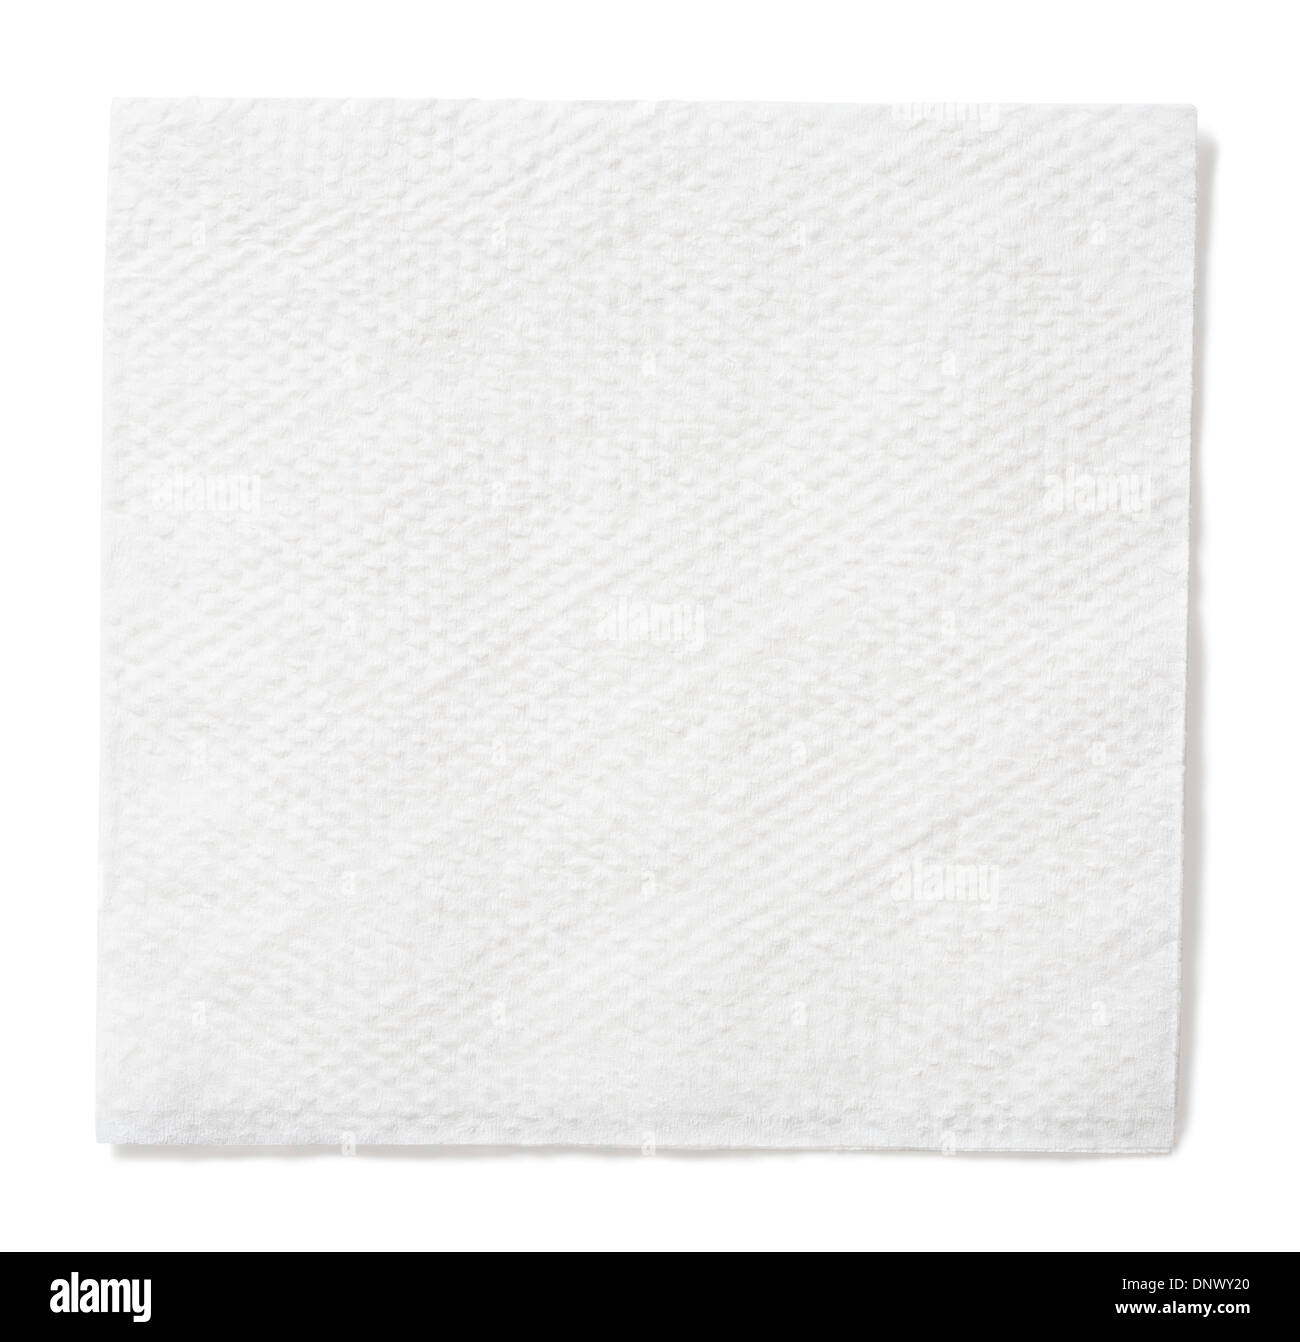 Libro blanco de la servilleta cuadrados aislada con trazado de recorte incluido Foto de stock